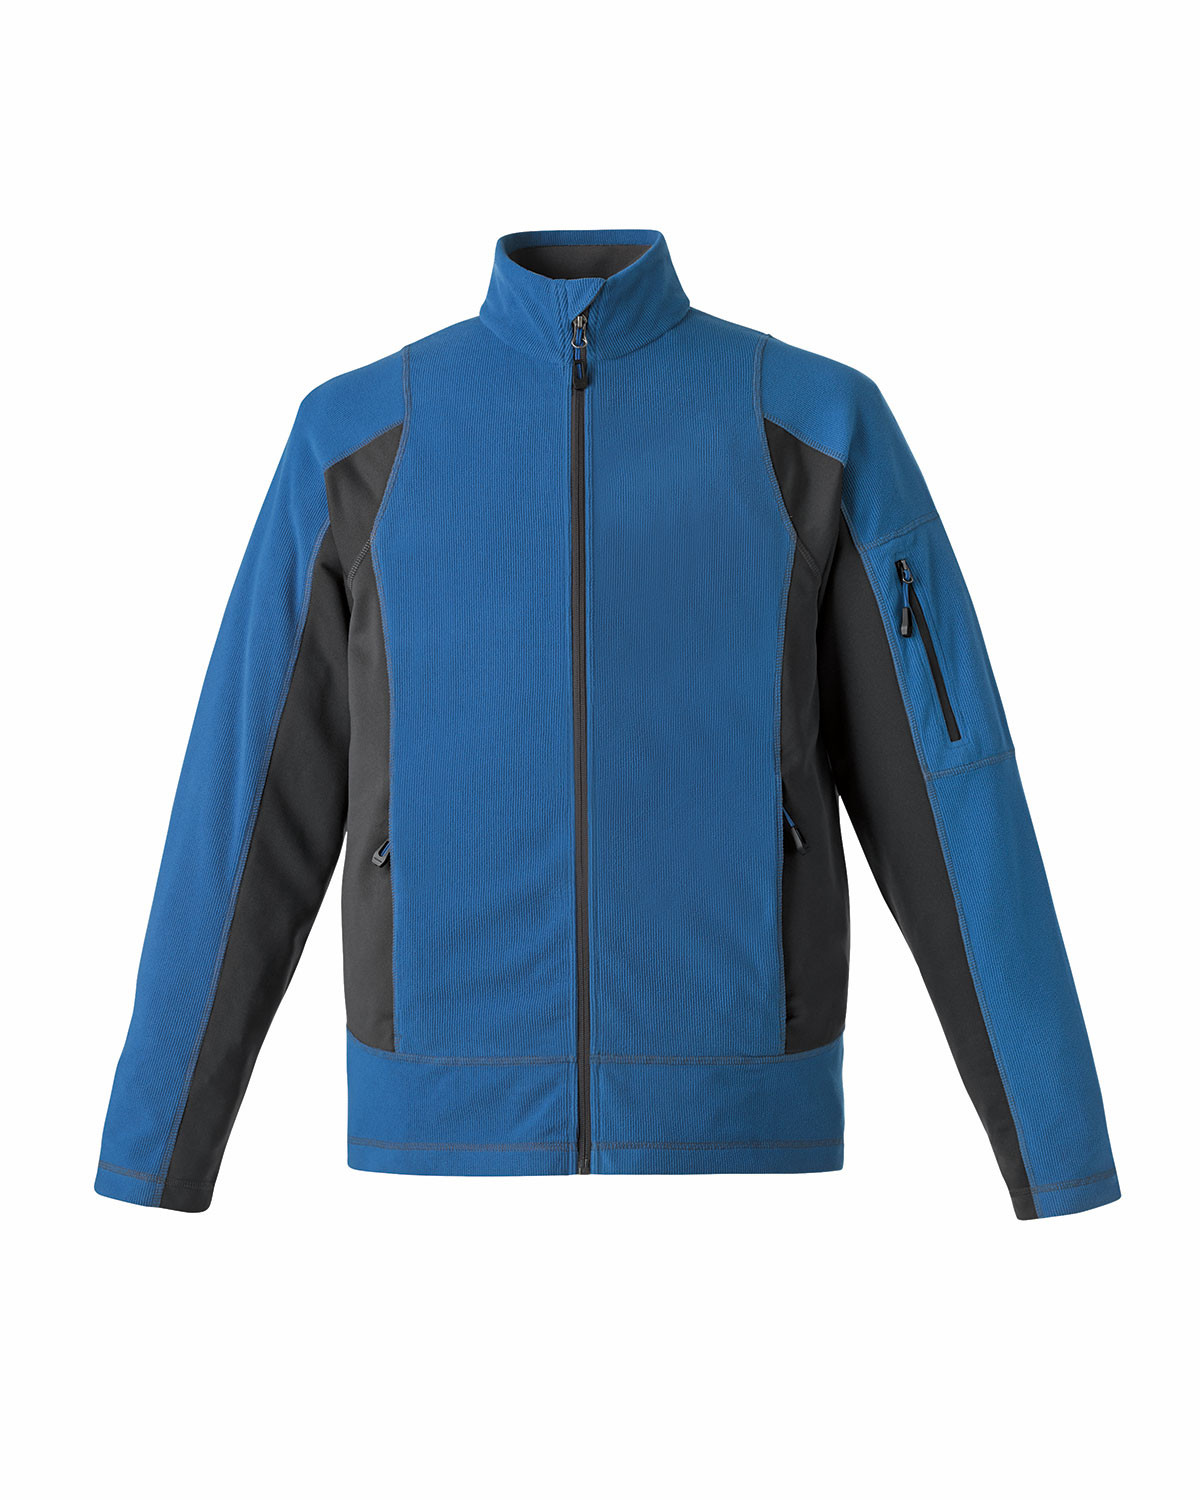 Ash City Cotton/Poly Fleece 88198 - Generate Men's Textured Fleece Jacket